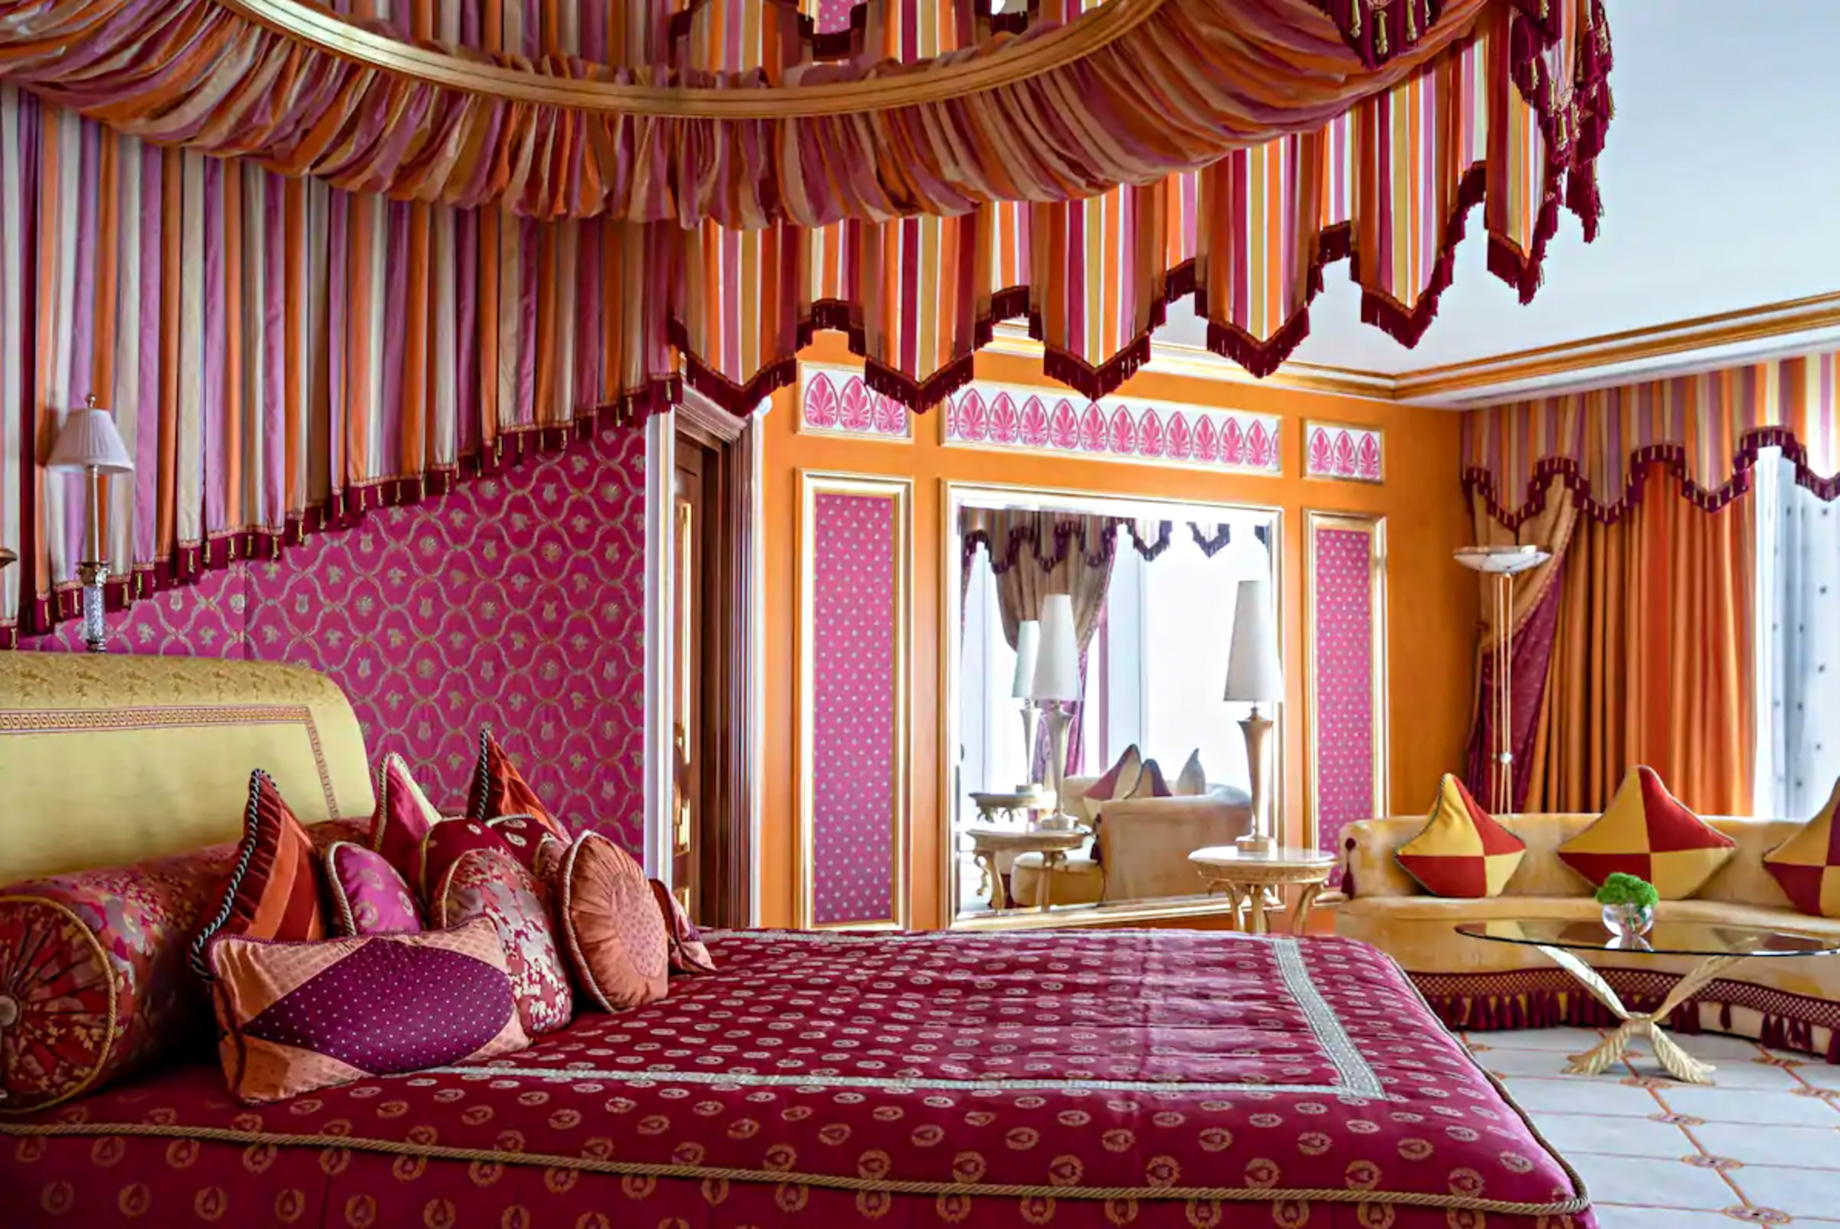 Burj Al Arab Jumeirah Hotel - Dubai, UAE - Royal Suite Bedroom